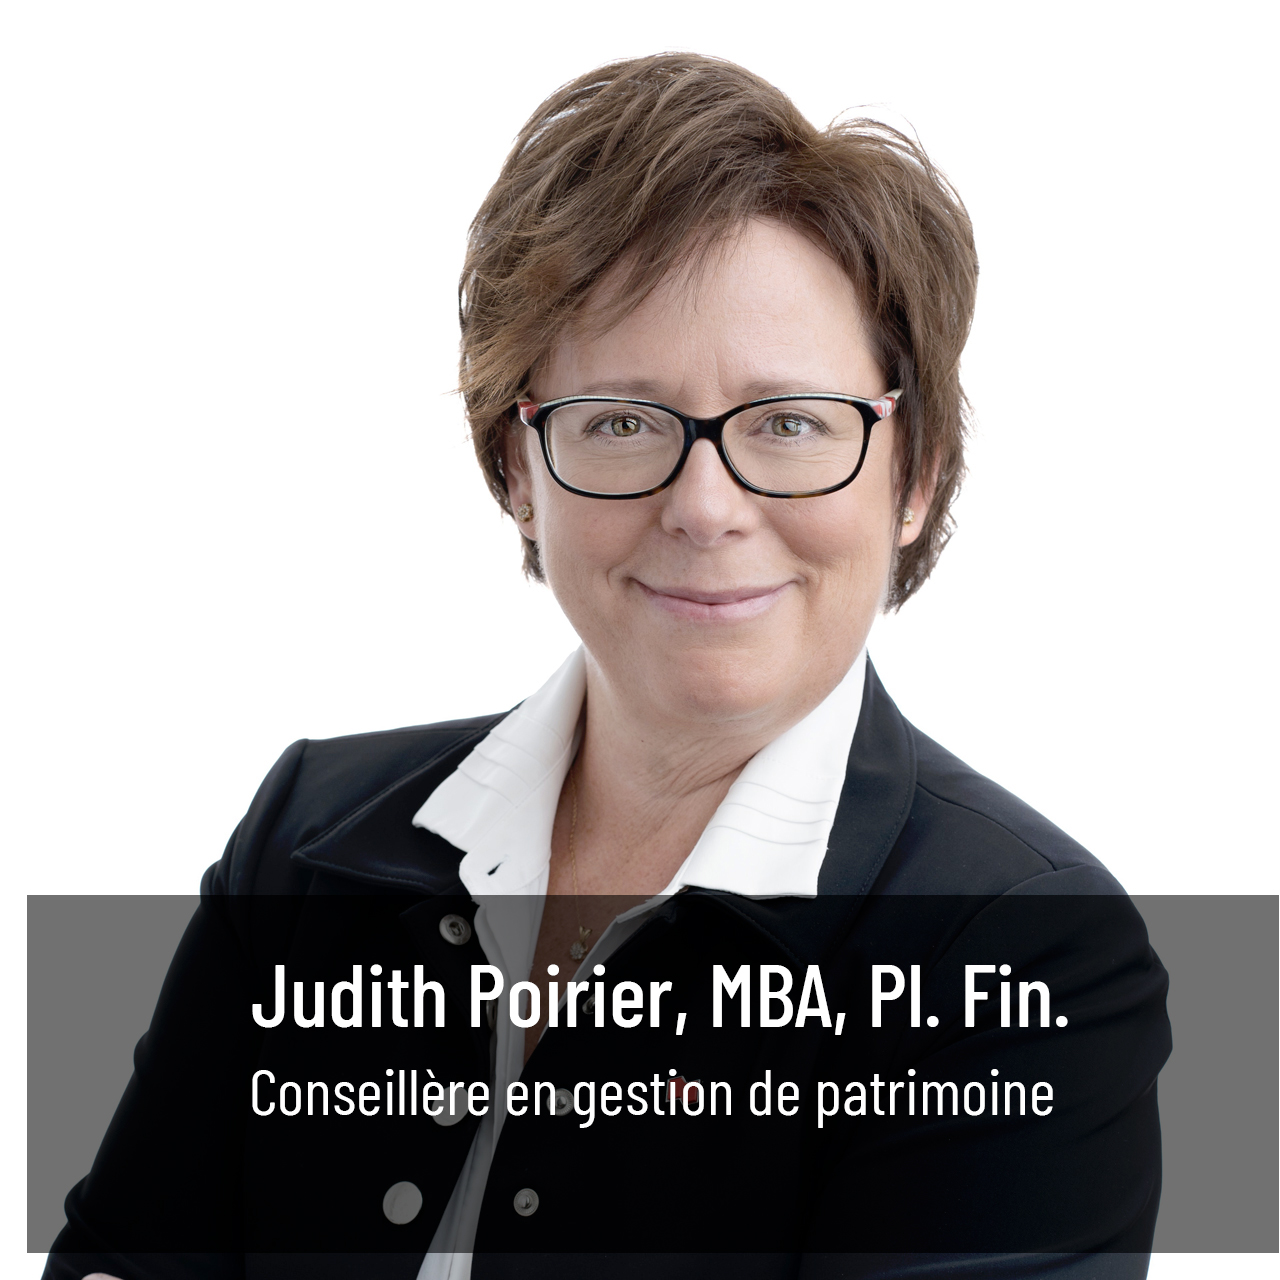 Judith Poirier